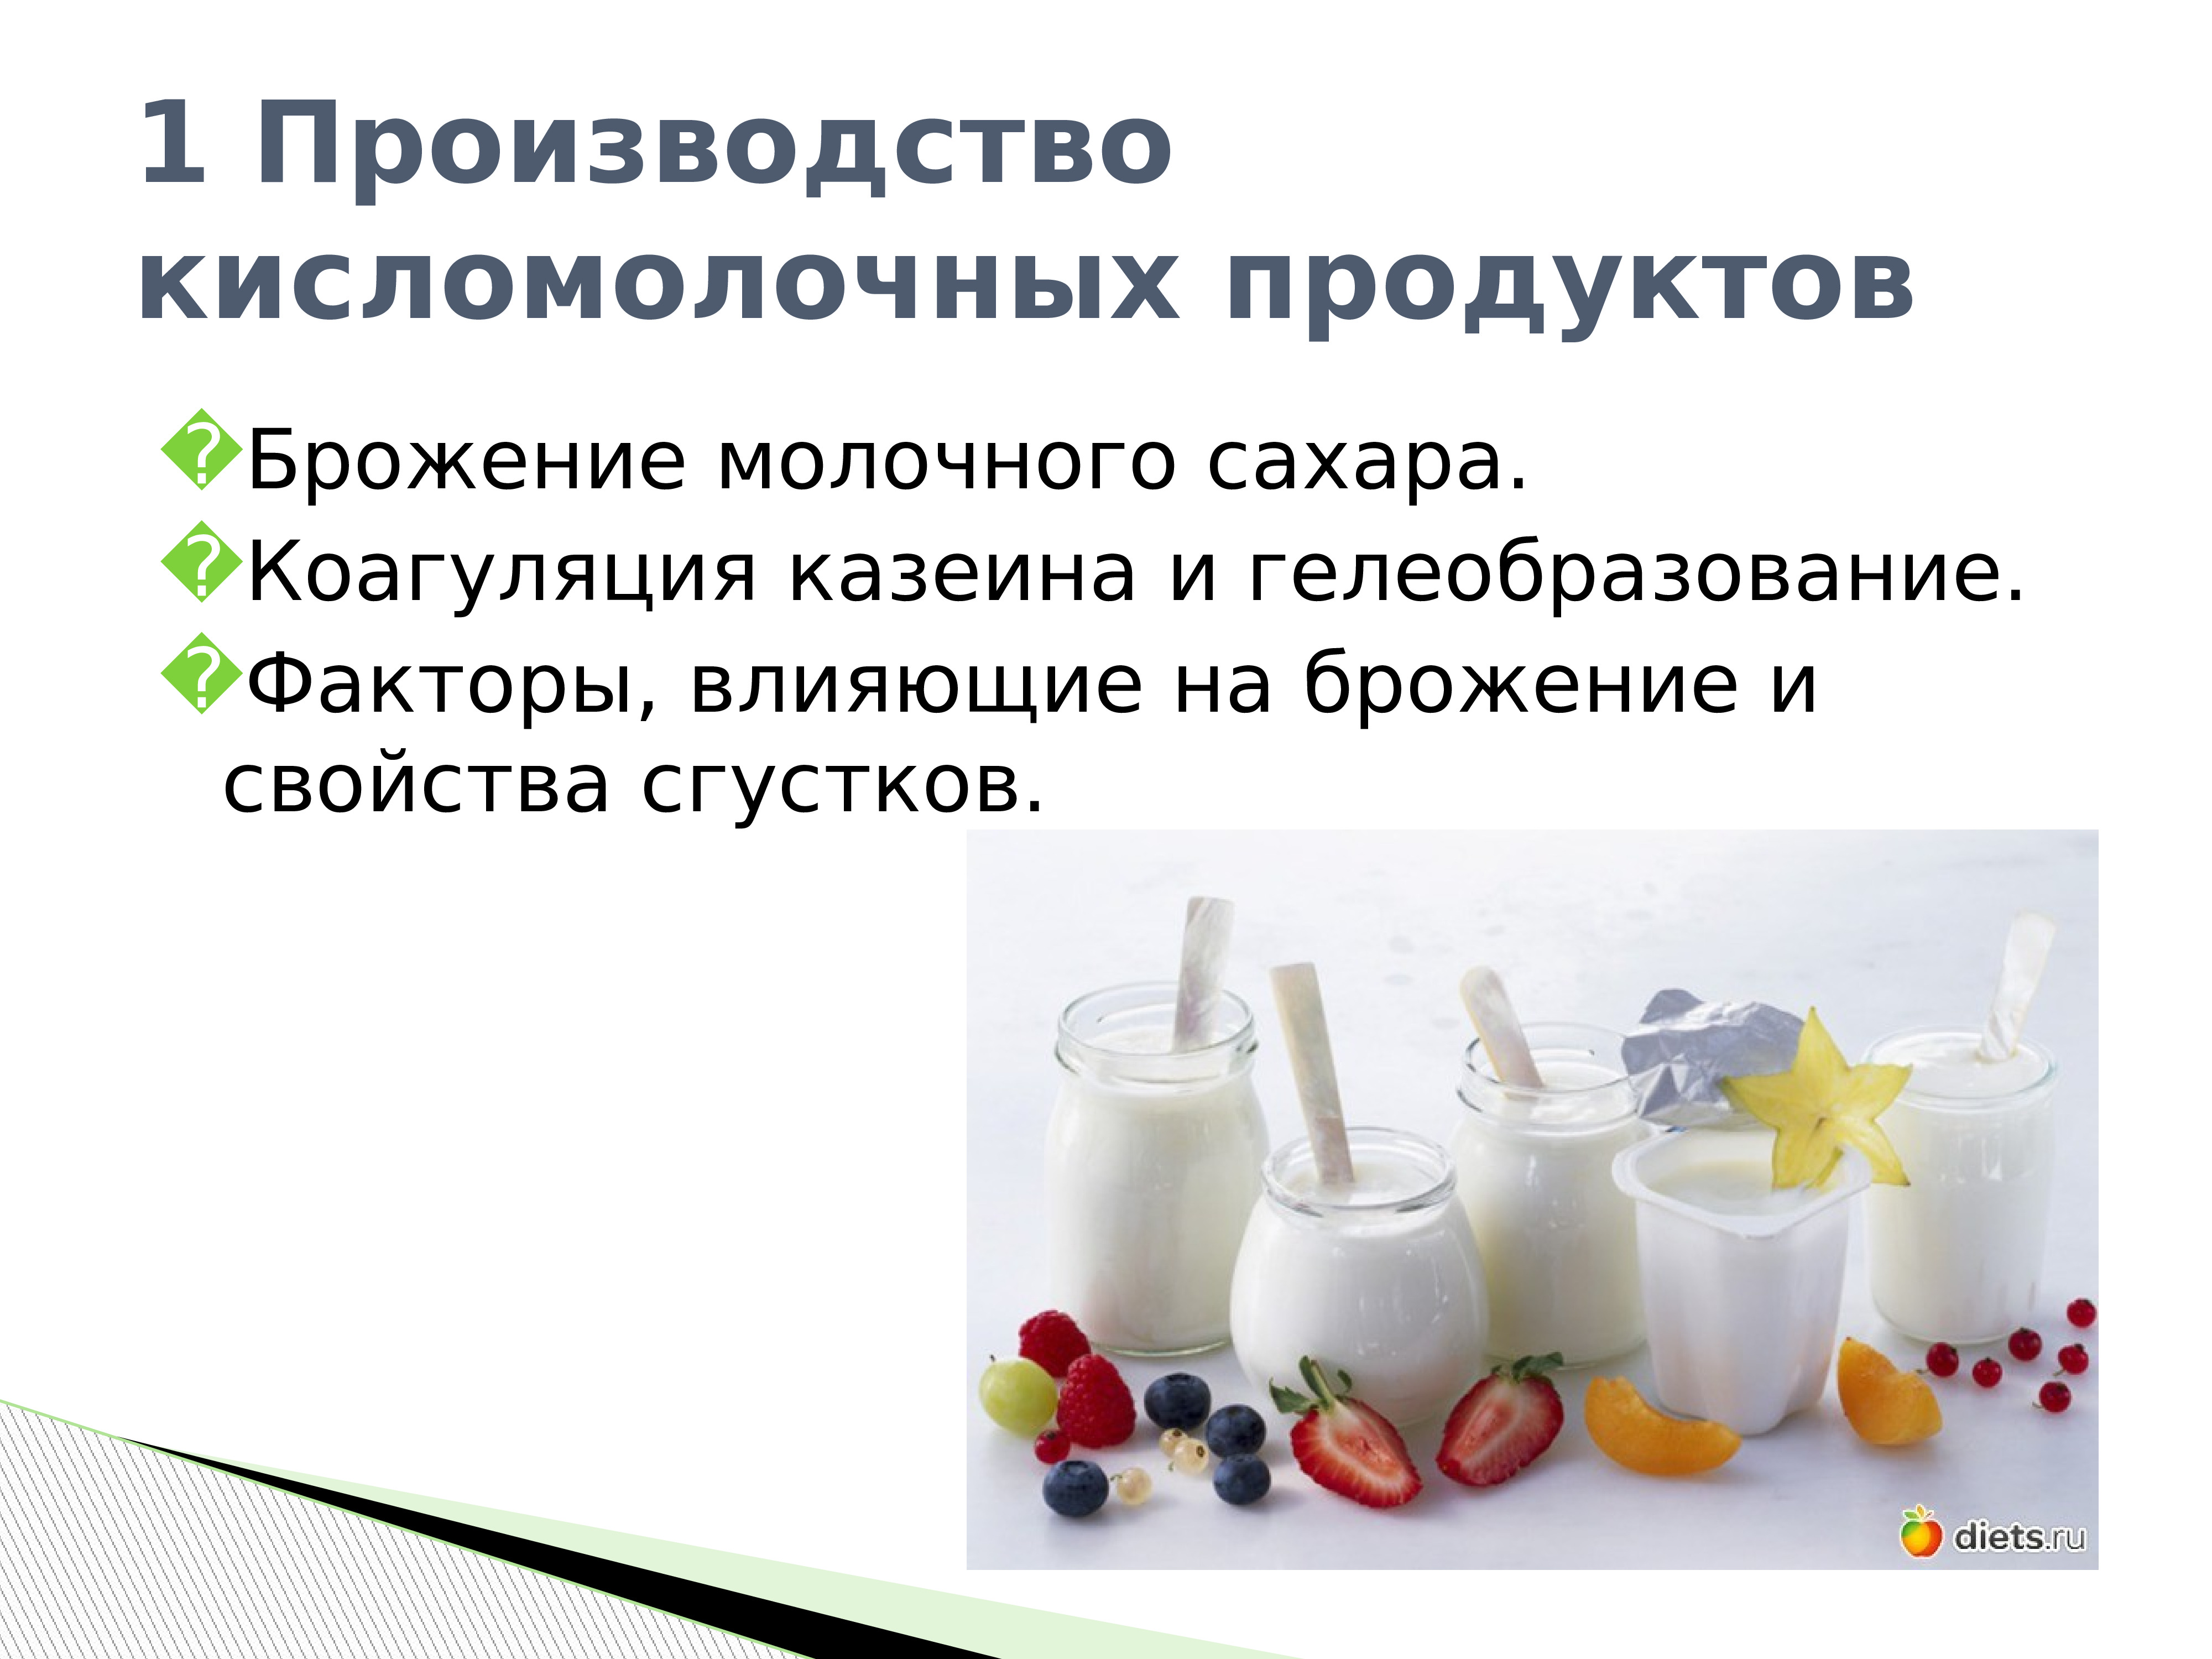 Кисломолочные продукты содержат сахар. Производство молочных и кисломолочных продуктов. Брожение кисломолочных продуктов. Процесс кисломолочного брожения. Основы технологии производства кисломолочных продуктов.